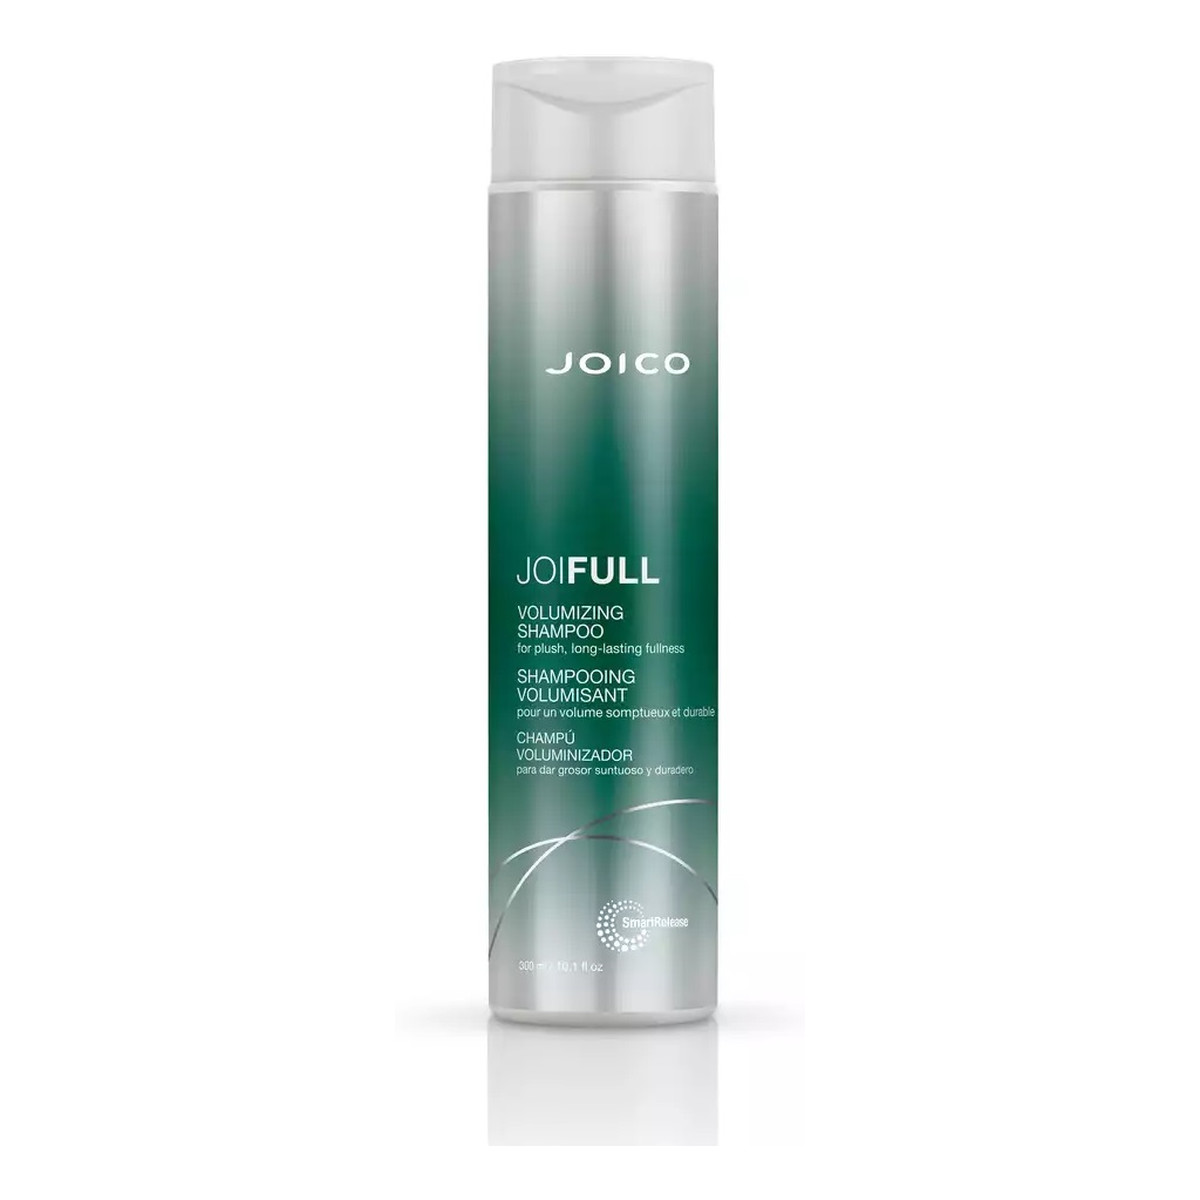 Joico Joifull volumizing shampoo szampon nadający włosom objętości 300ml